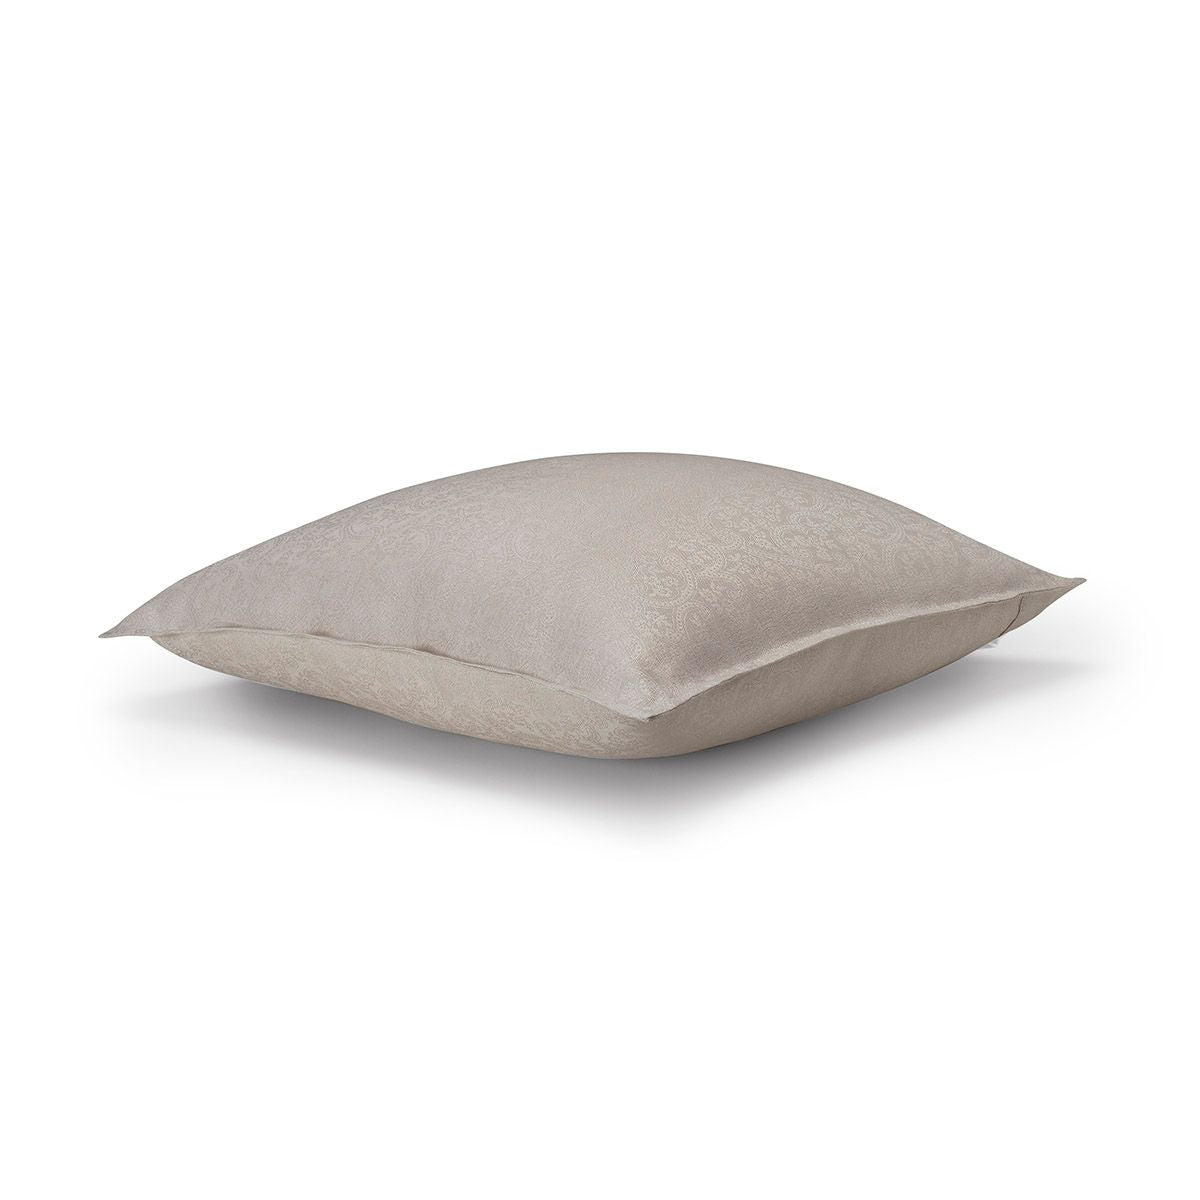 Portofino Fiori Beige Pillow by Le Jacquard Français | Fig Linens